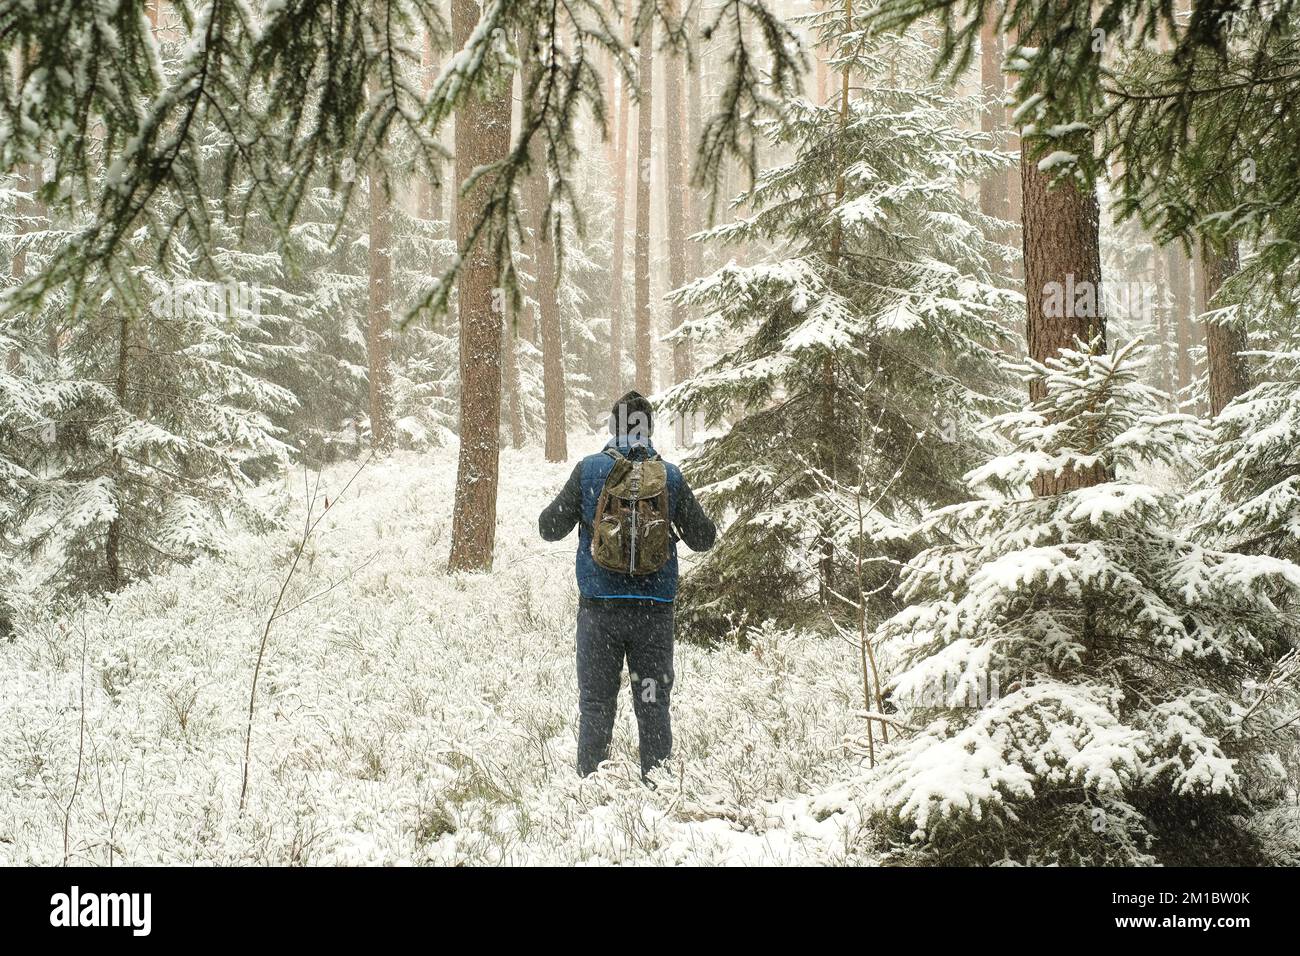 Reisen und Wandern in der Wintersaison. Mann mit Rucksack bei schneebem Wetter. Schneefall im Wald. Mensch in der natürlichen Umgebung in der kalten Jahreszeit Stockfoto